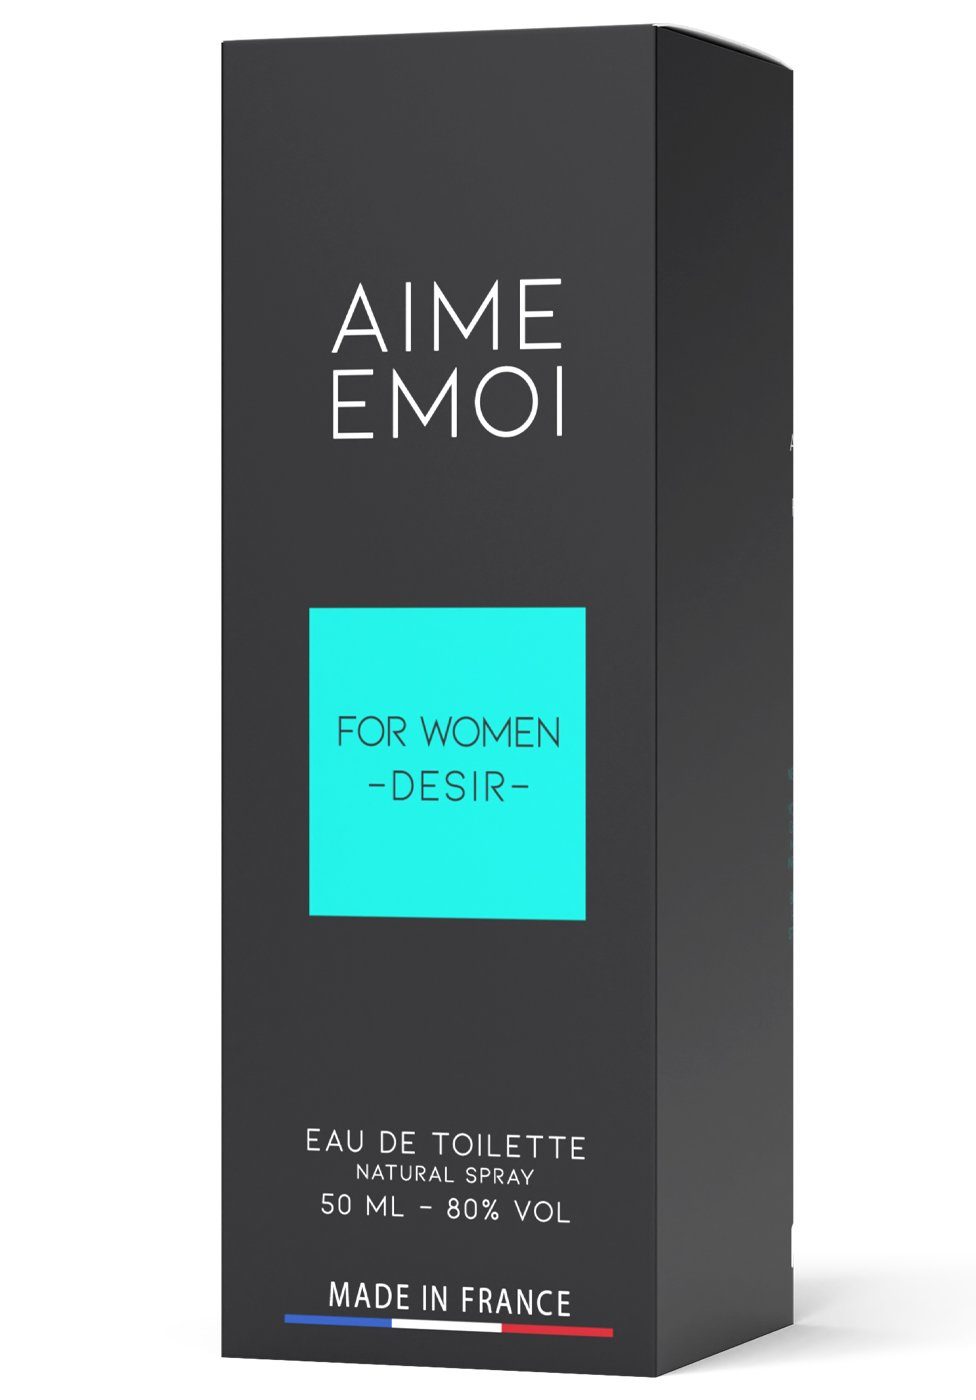 Parfum Toilette Emoi Eau de - Eau de Ruf Aime Pour Femme